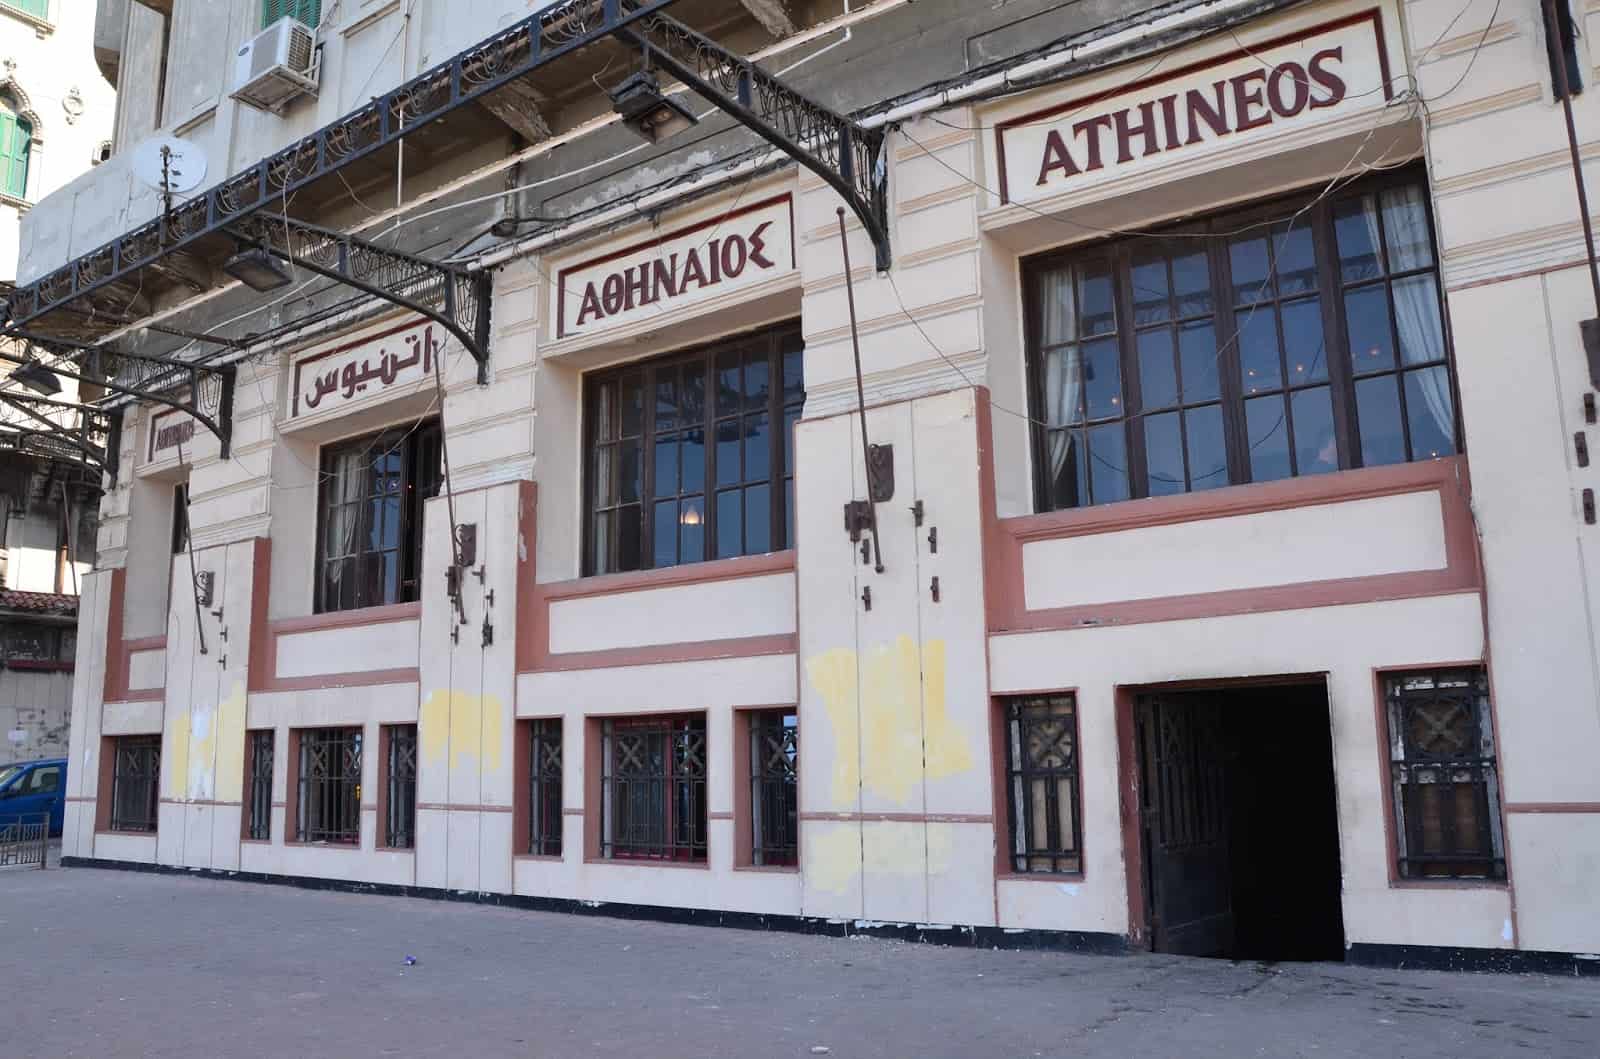 Athineos Café in Alexandria, Egypt